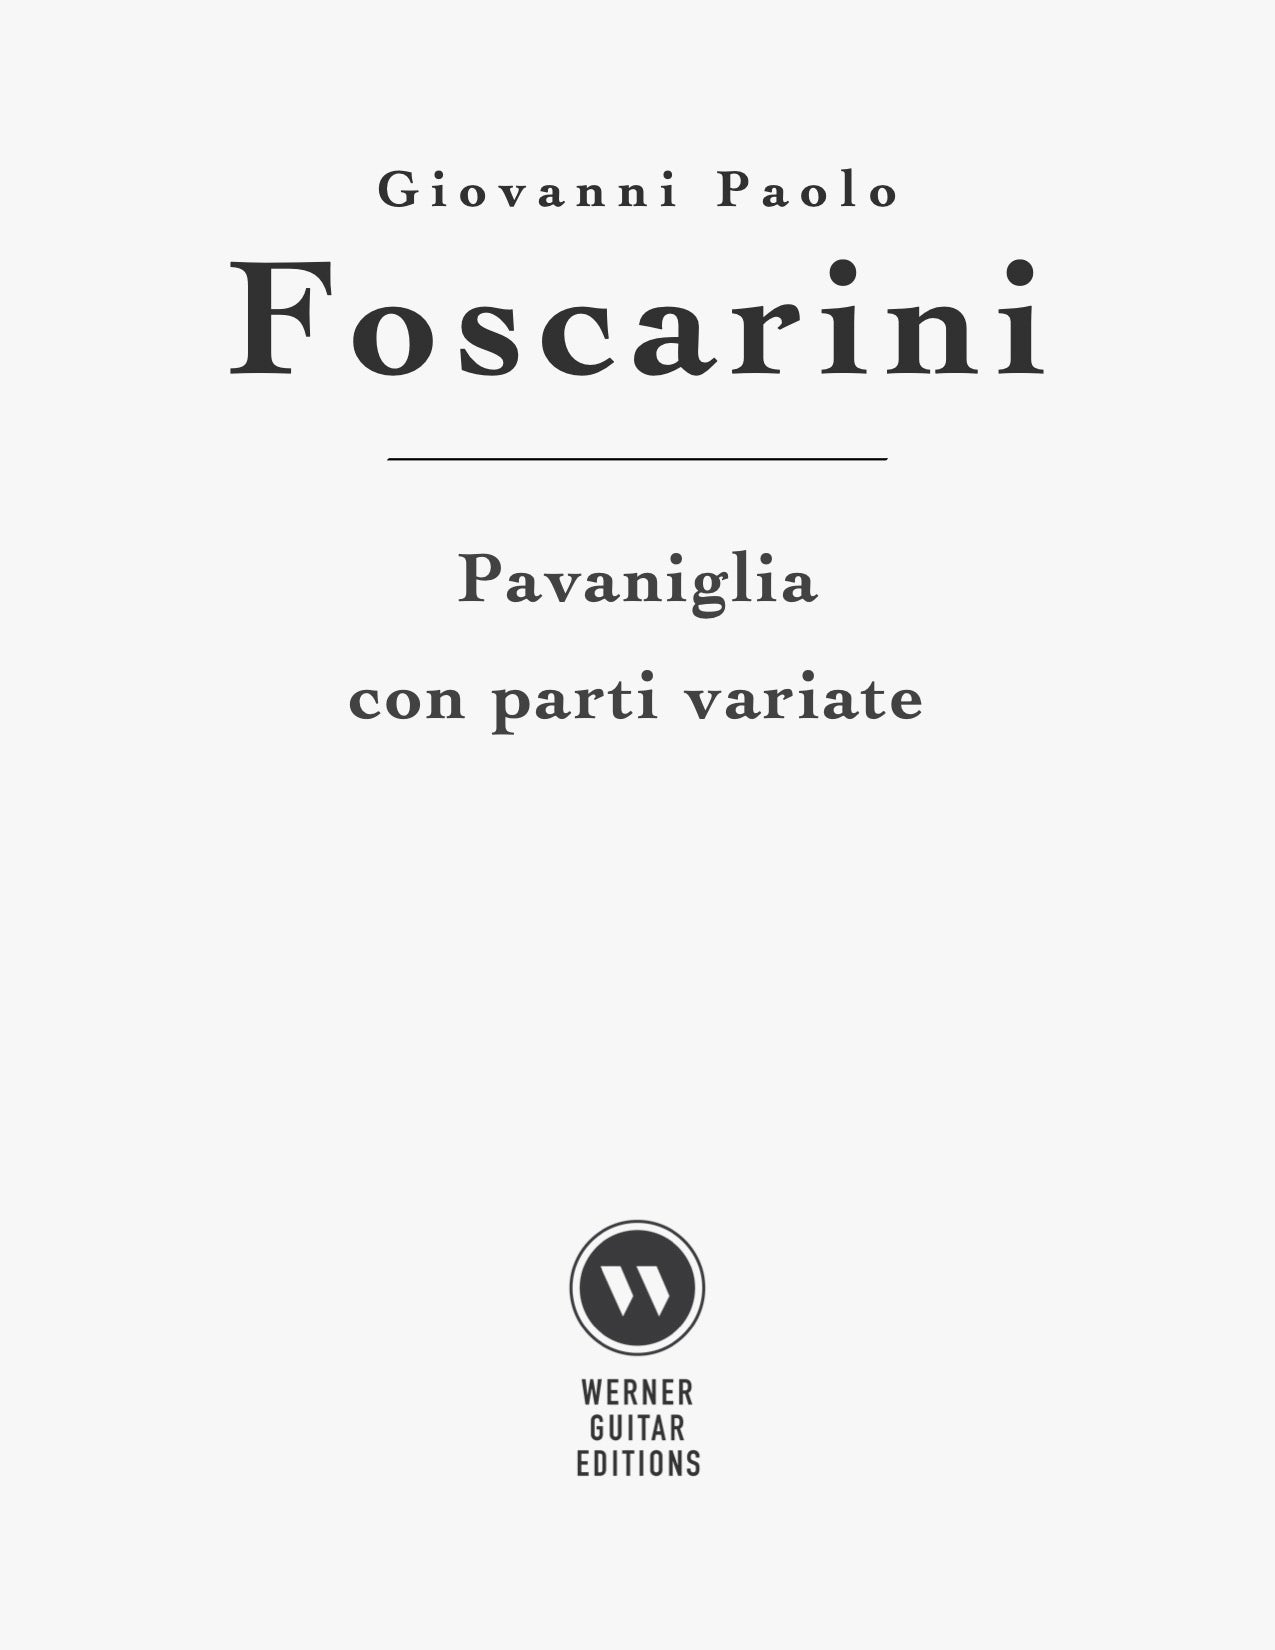 Pavaniglia con parti variate by Giovanni Paolo Foscarini (PDF Sheet Music for Guitar)